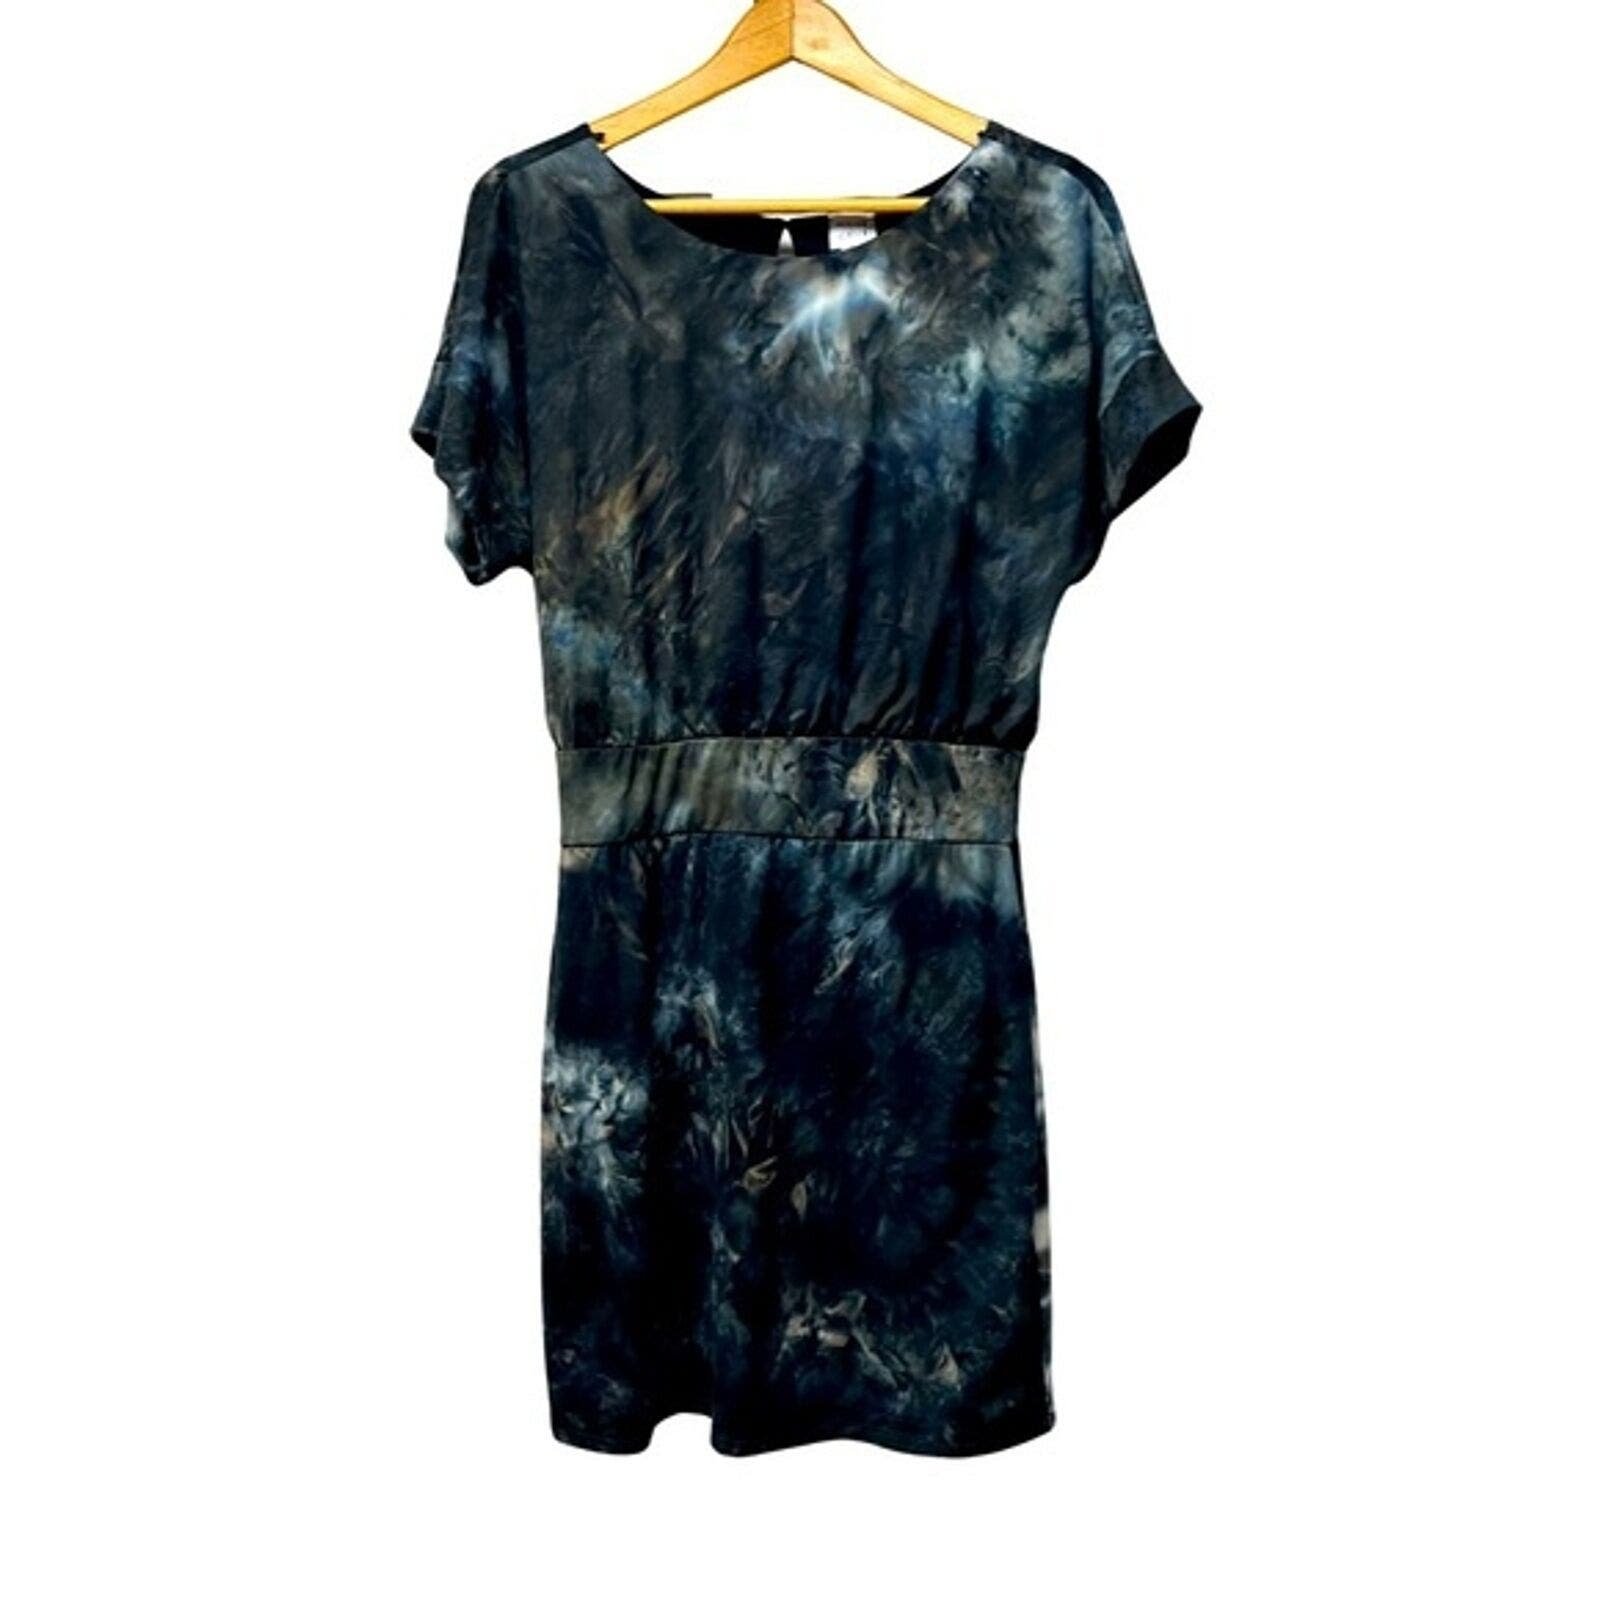 good price Peyton Jensen Trixie Tie Dye Mini Dress Black Gray Size Medium P3fYUL6bD Cheap